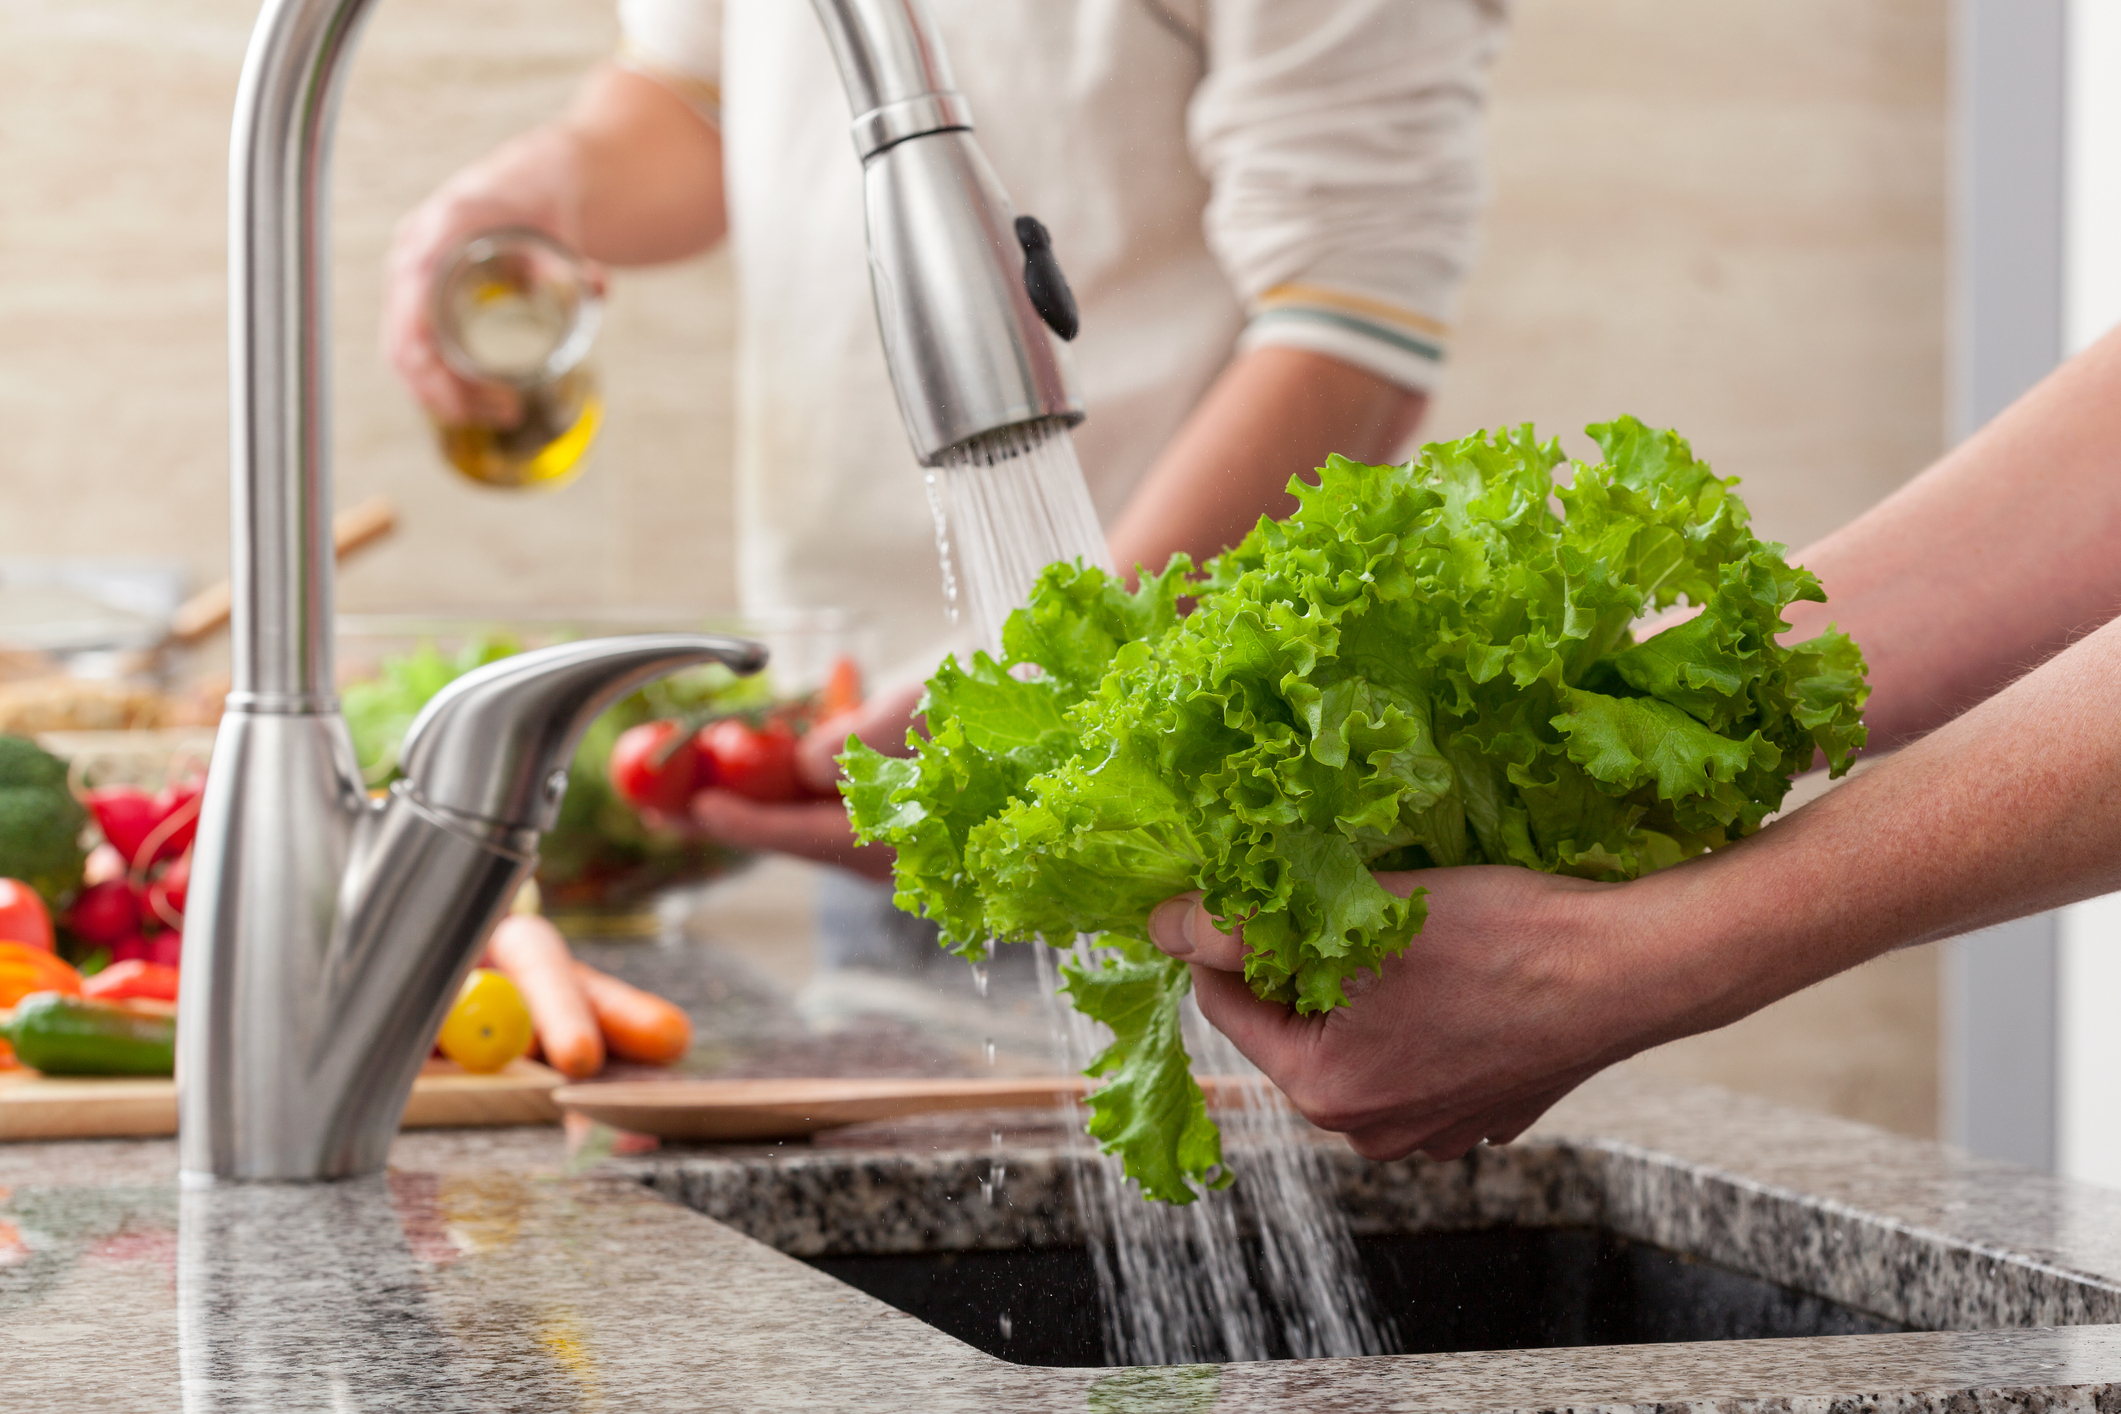 Os cuidados com a saúde também envolvem o processo de higienização das verduras, frutas e legumes é uma etapa muito importante para isso.